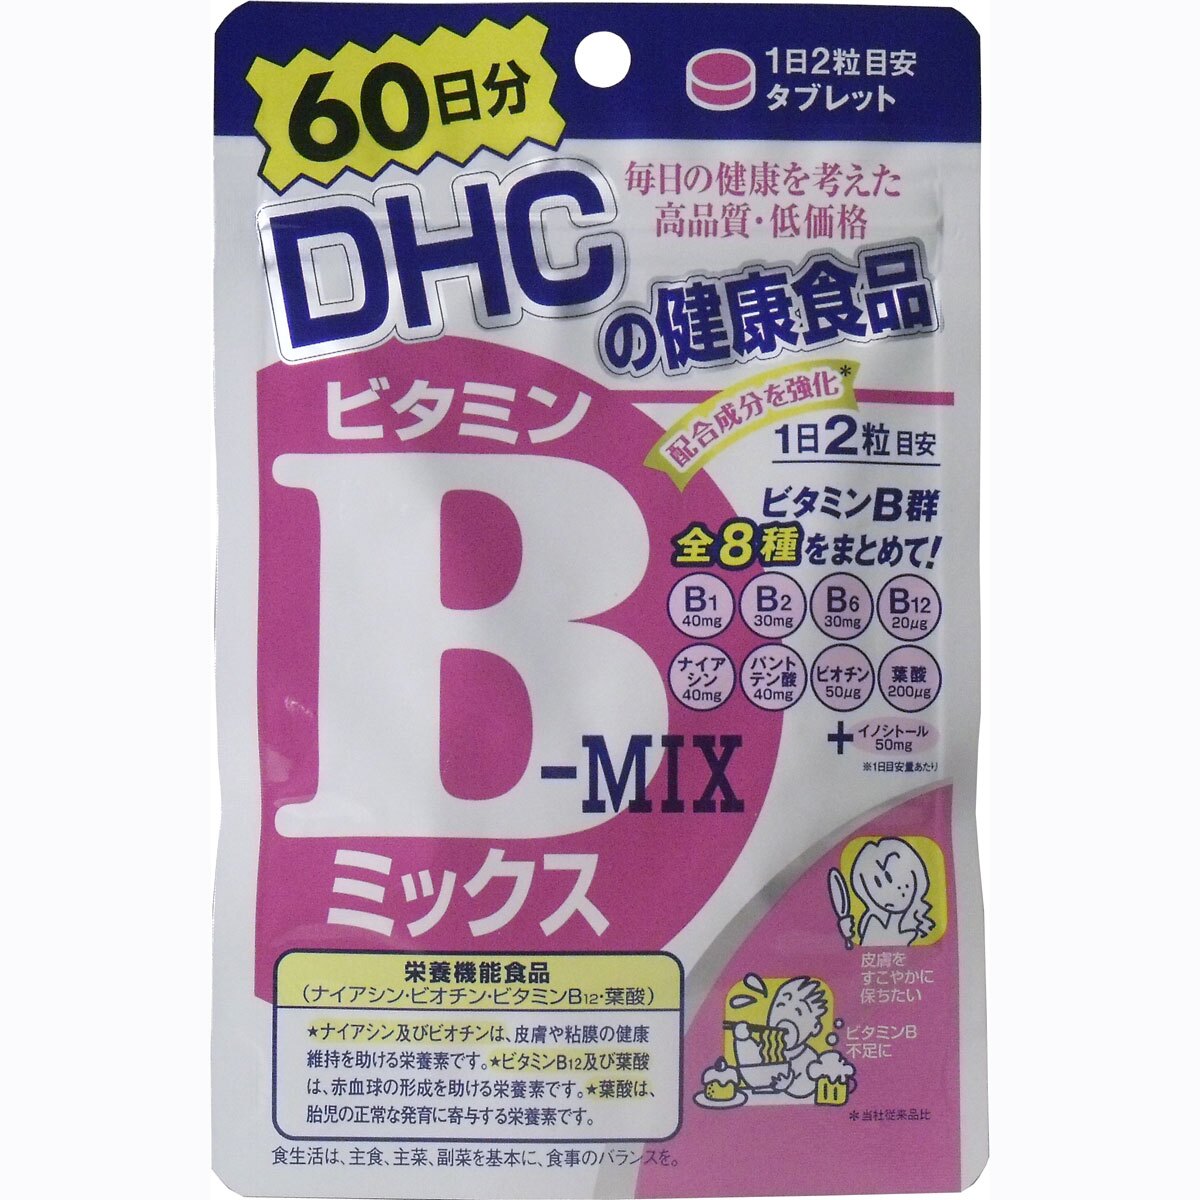 大賀屋 DHC 維生素B群 維他命B群 B群 美容 硬膠囊 120粒 60天 日本製 正版 授權 J00014659